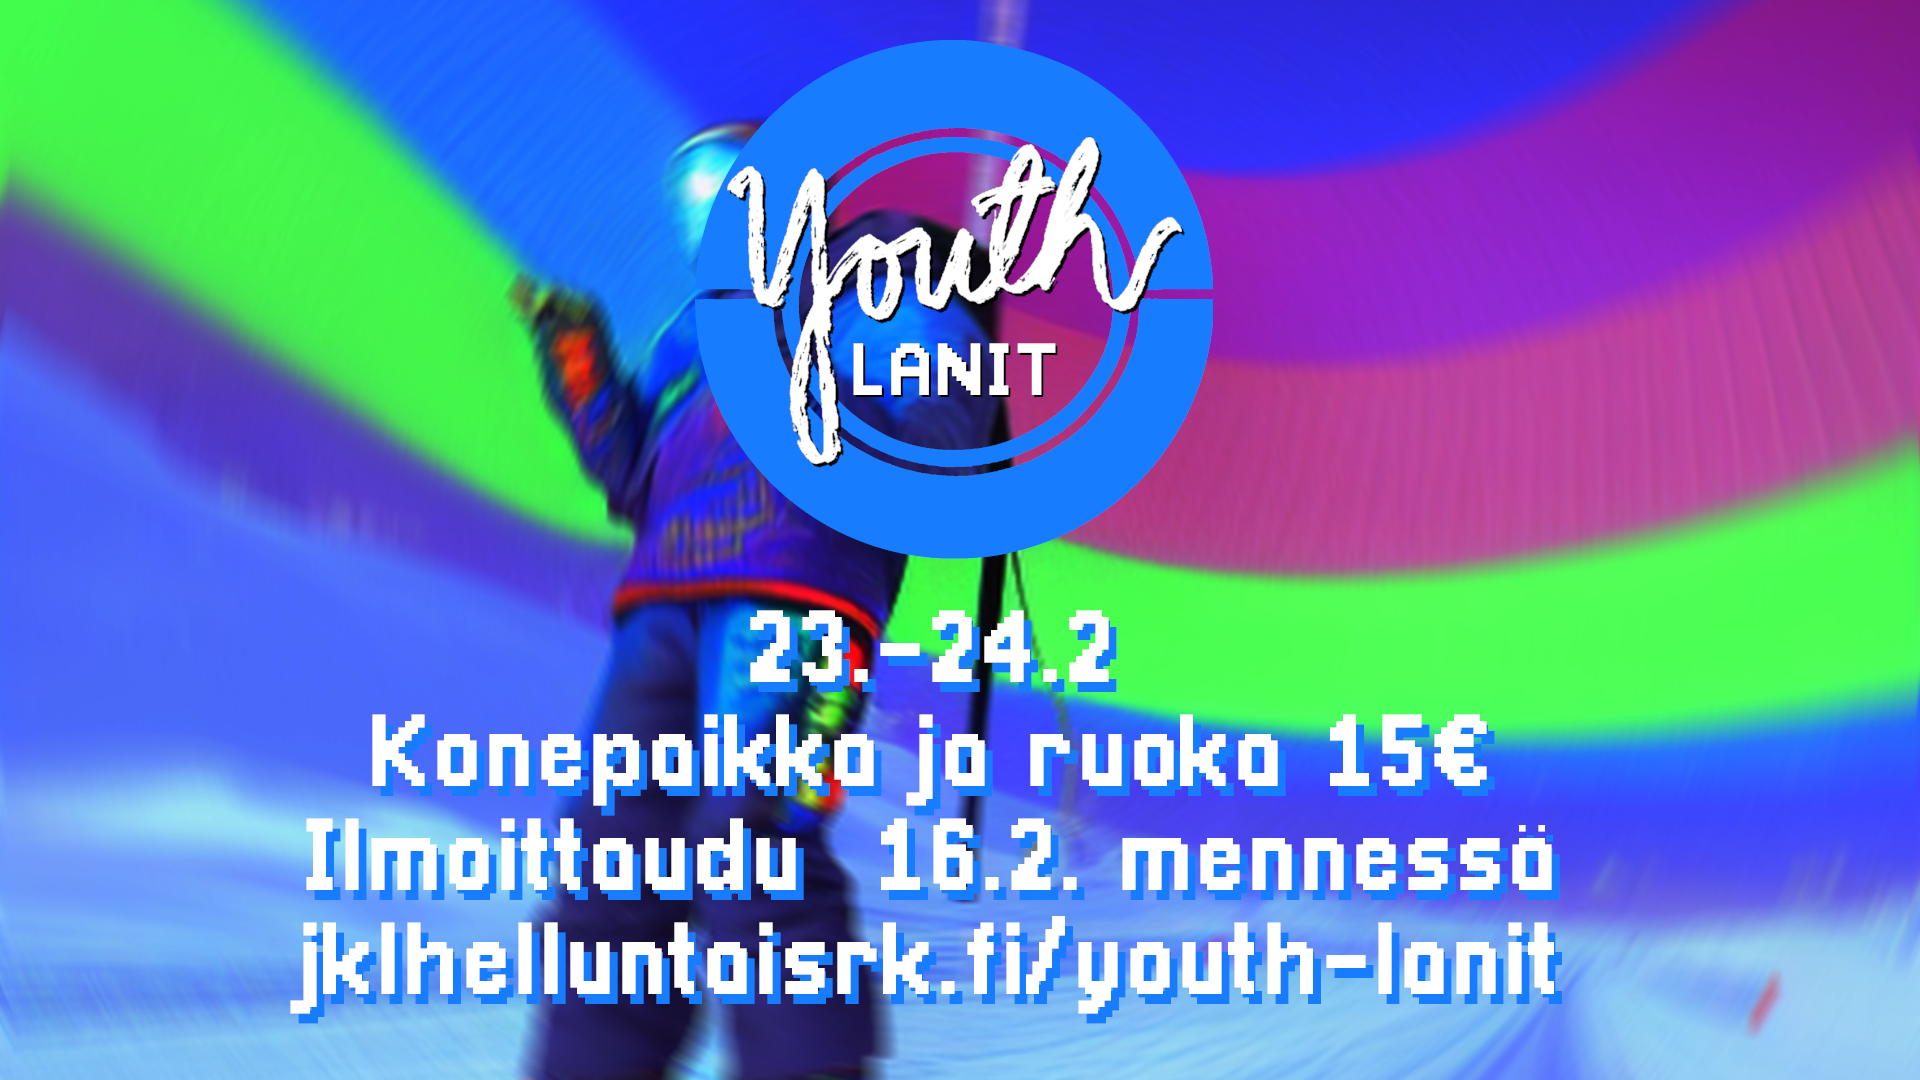 Youth-lanit